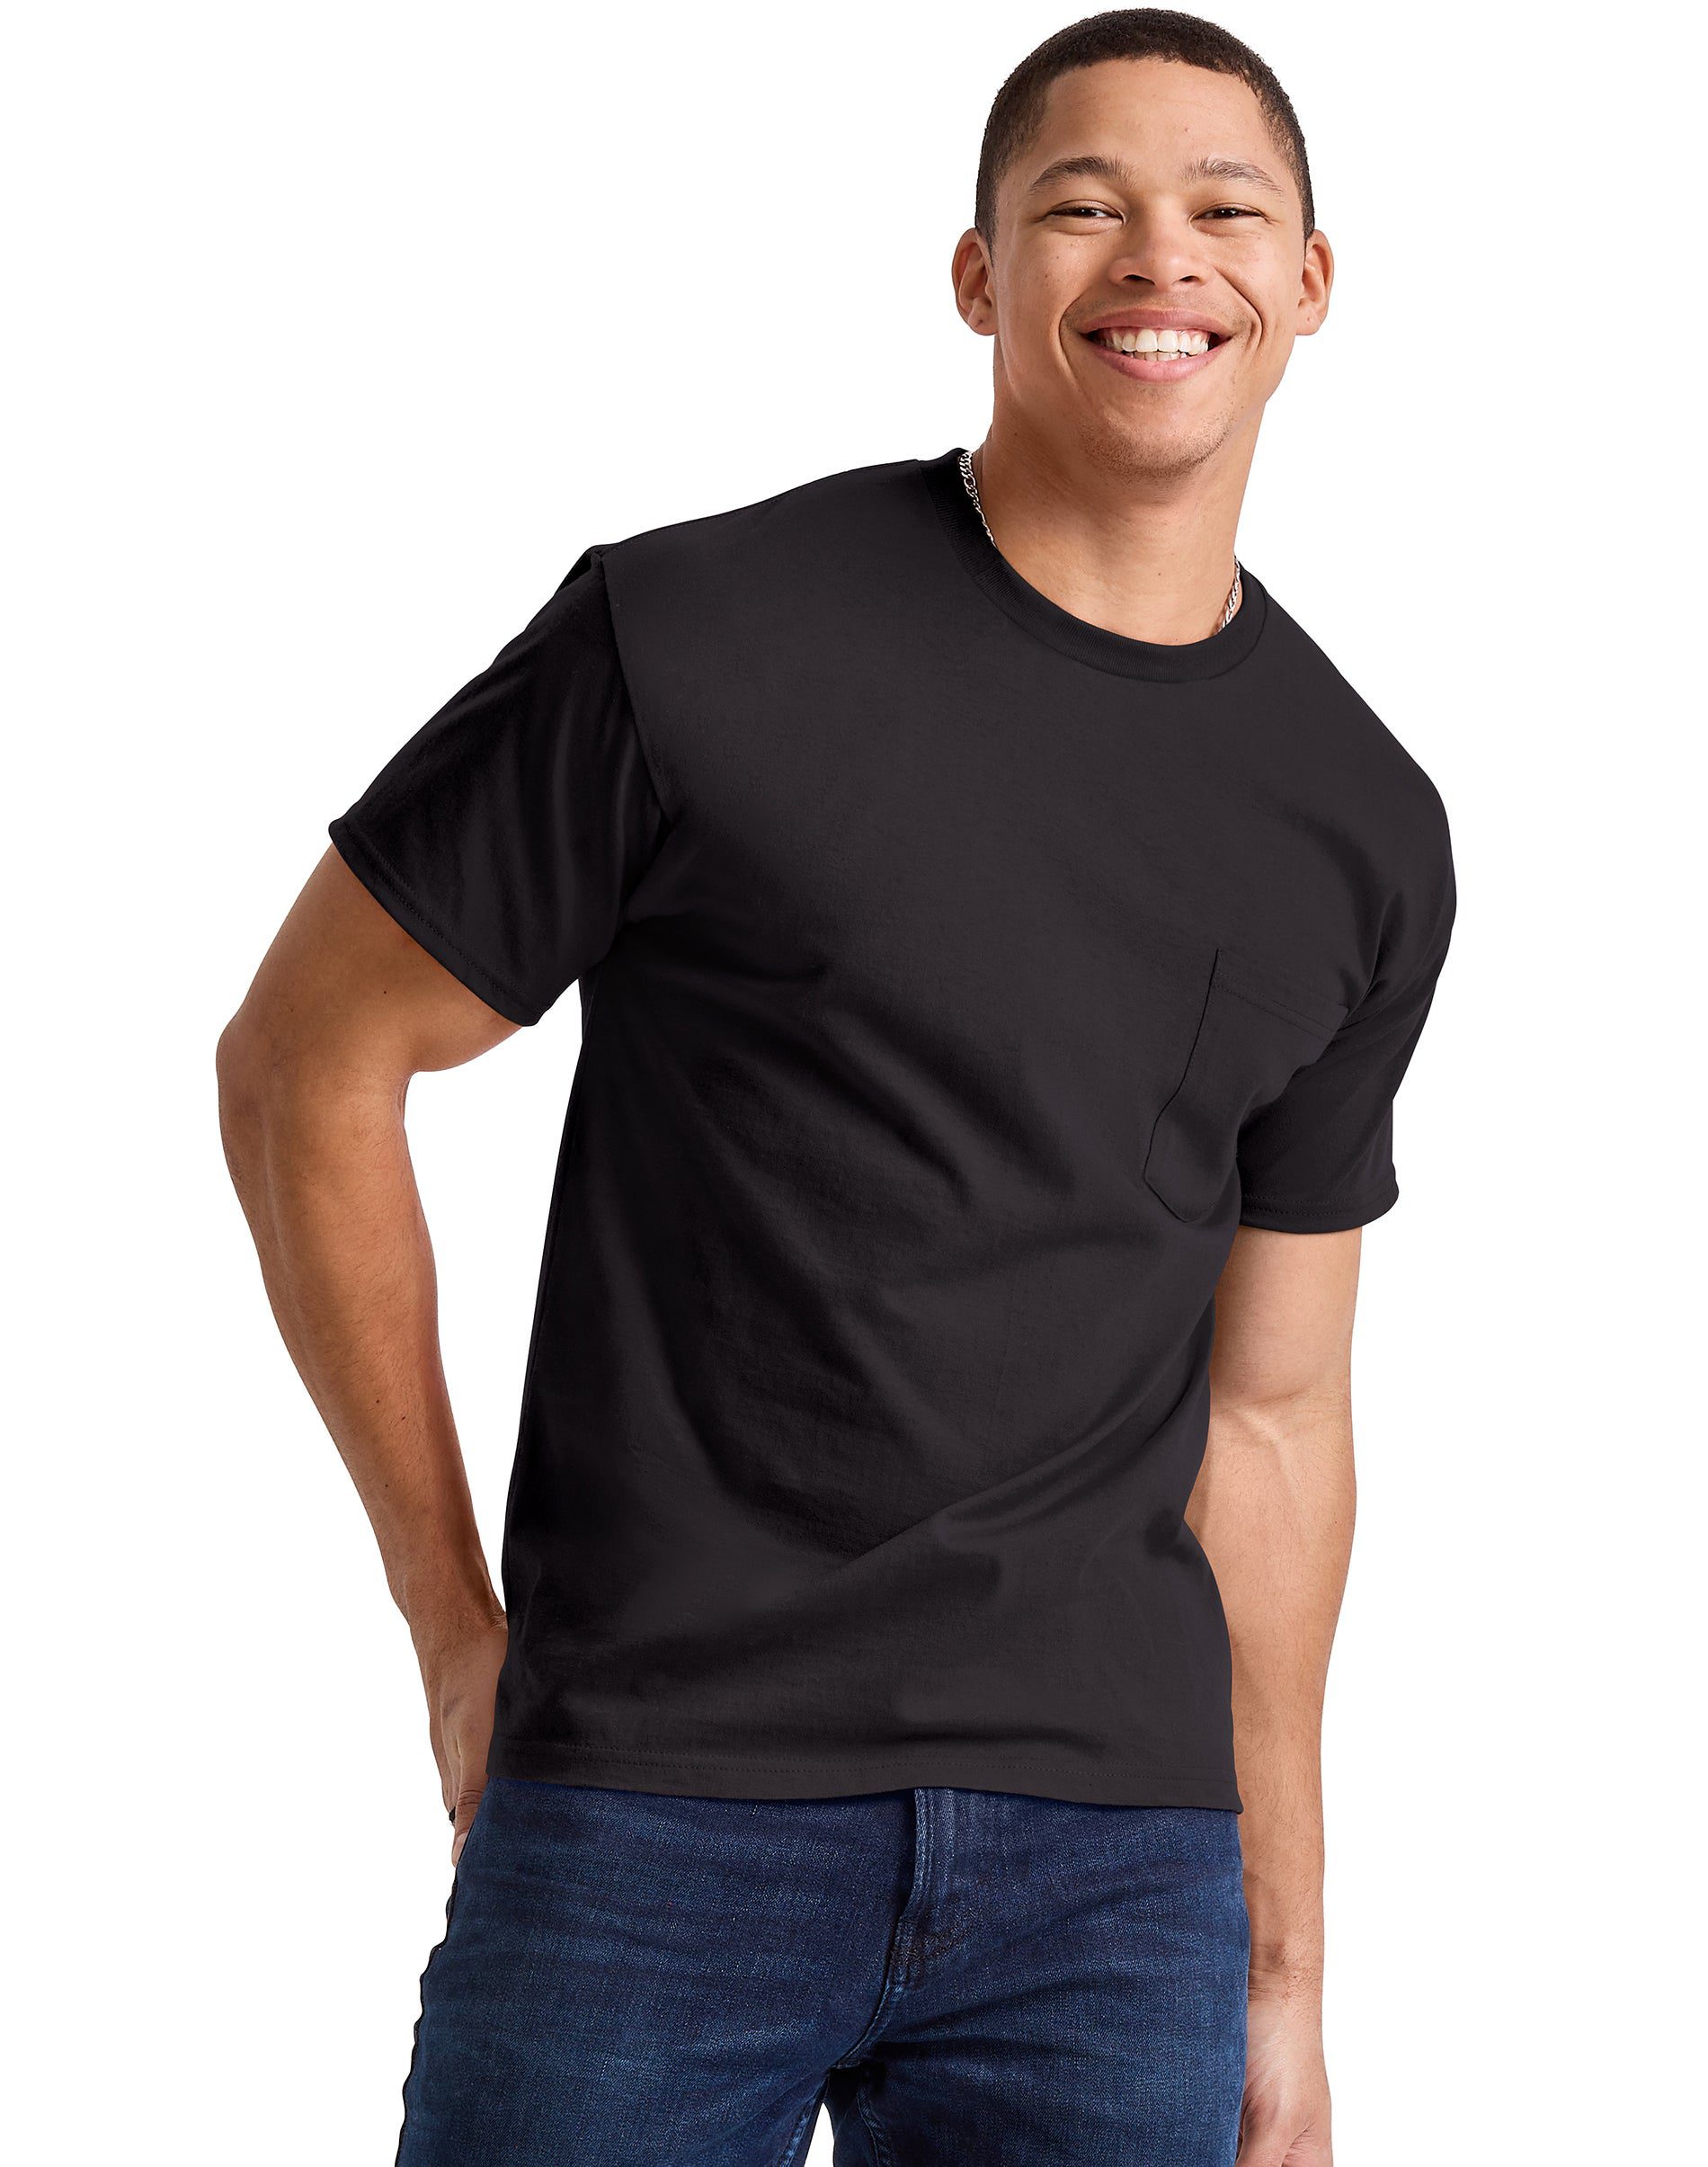 Hanes Mens Essentials Cotton Pocket T-Shirt